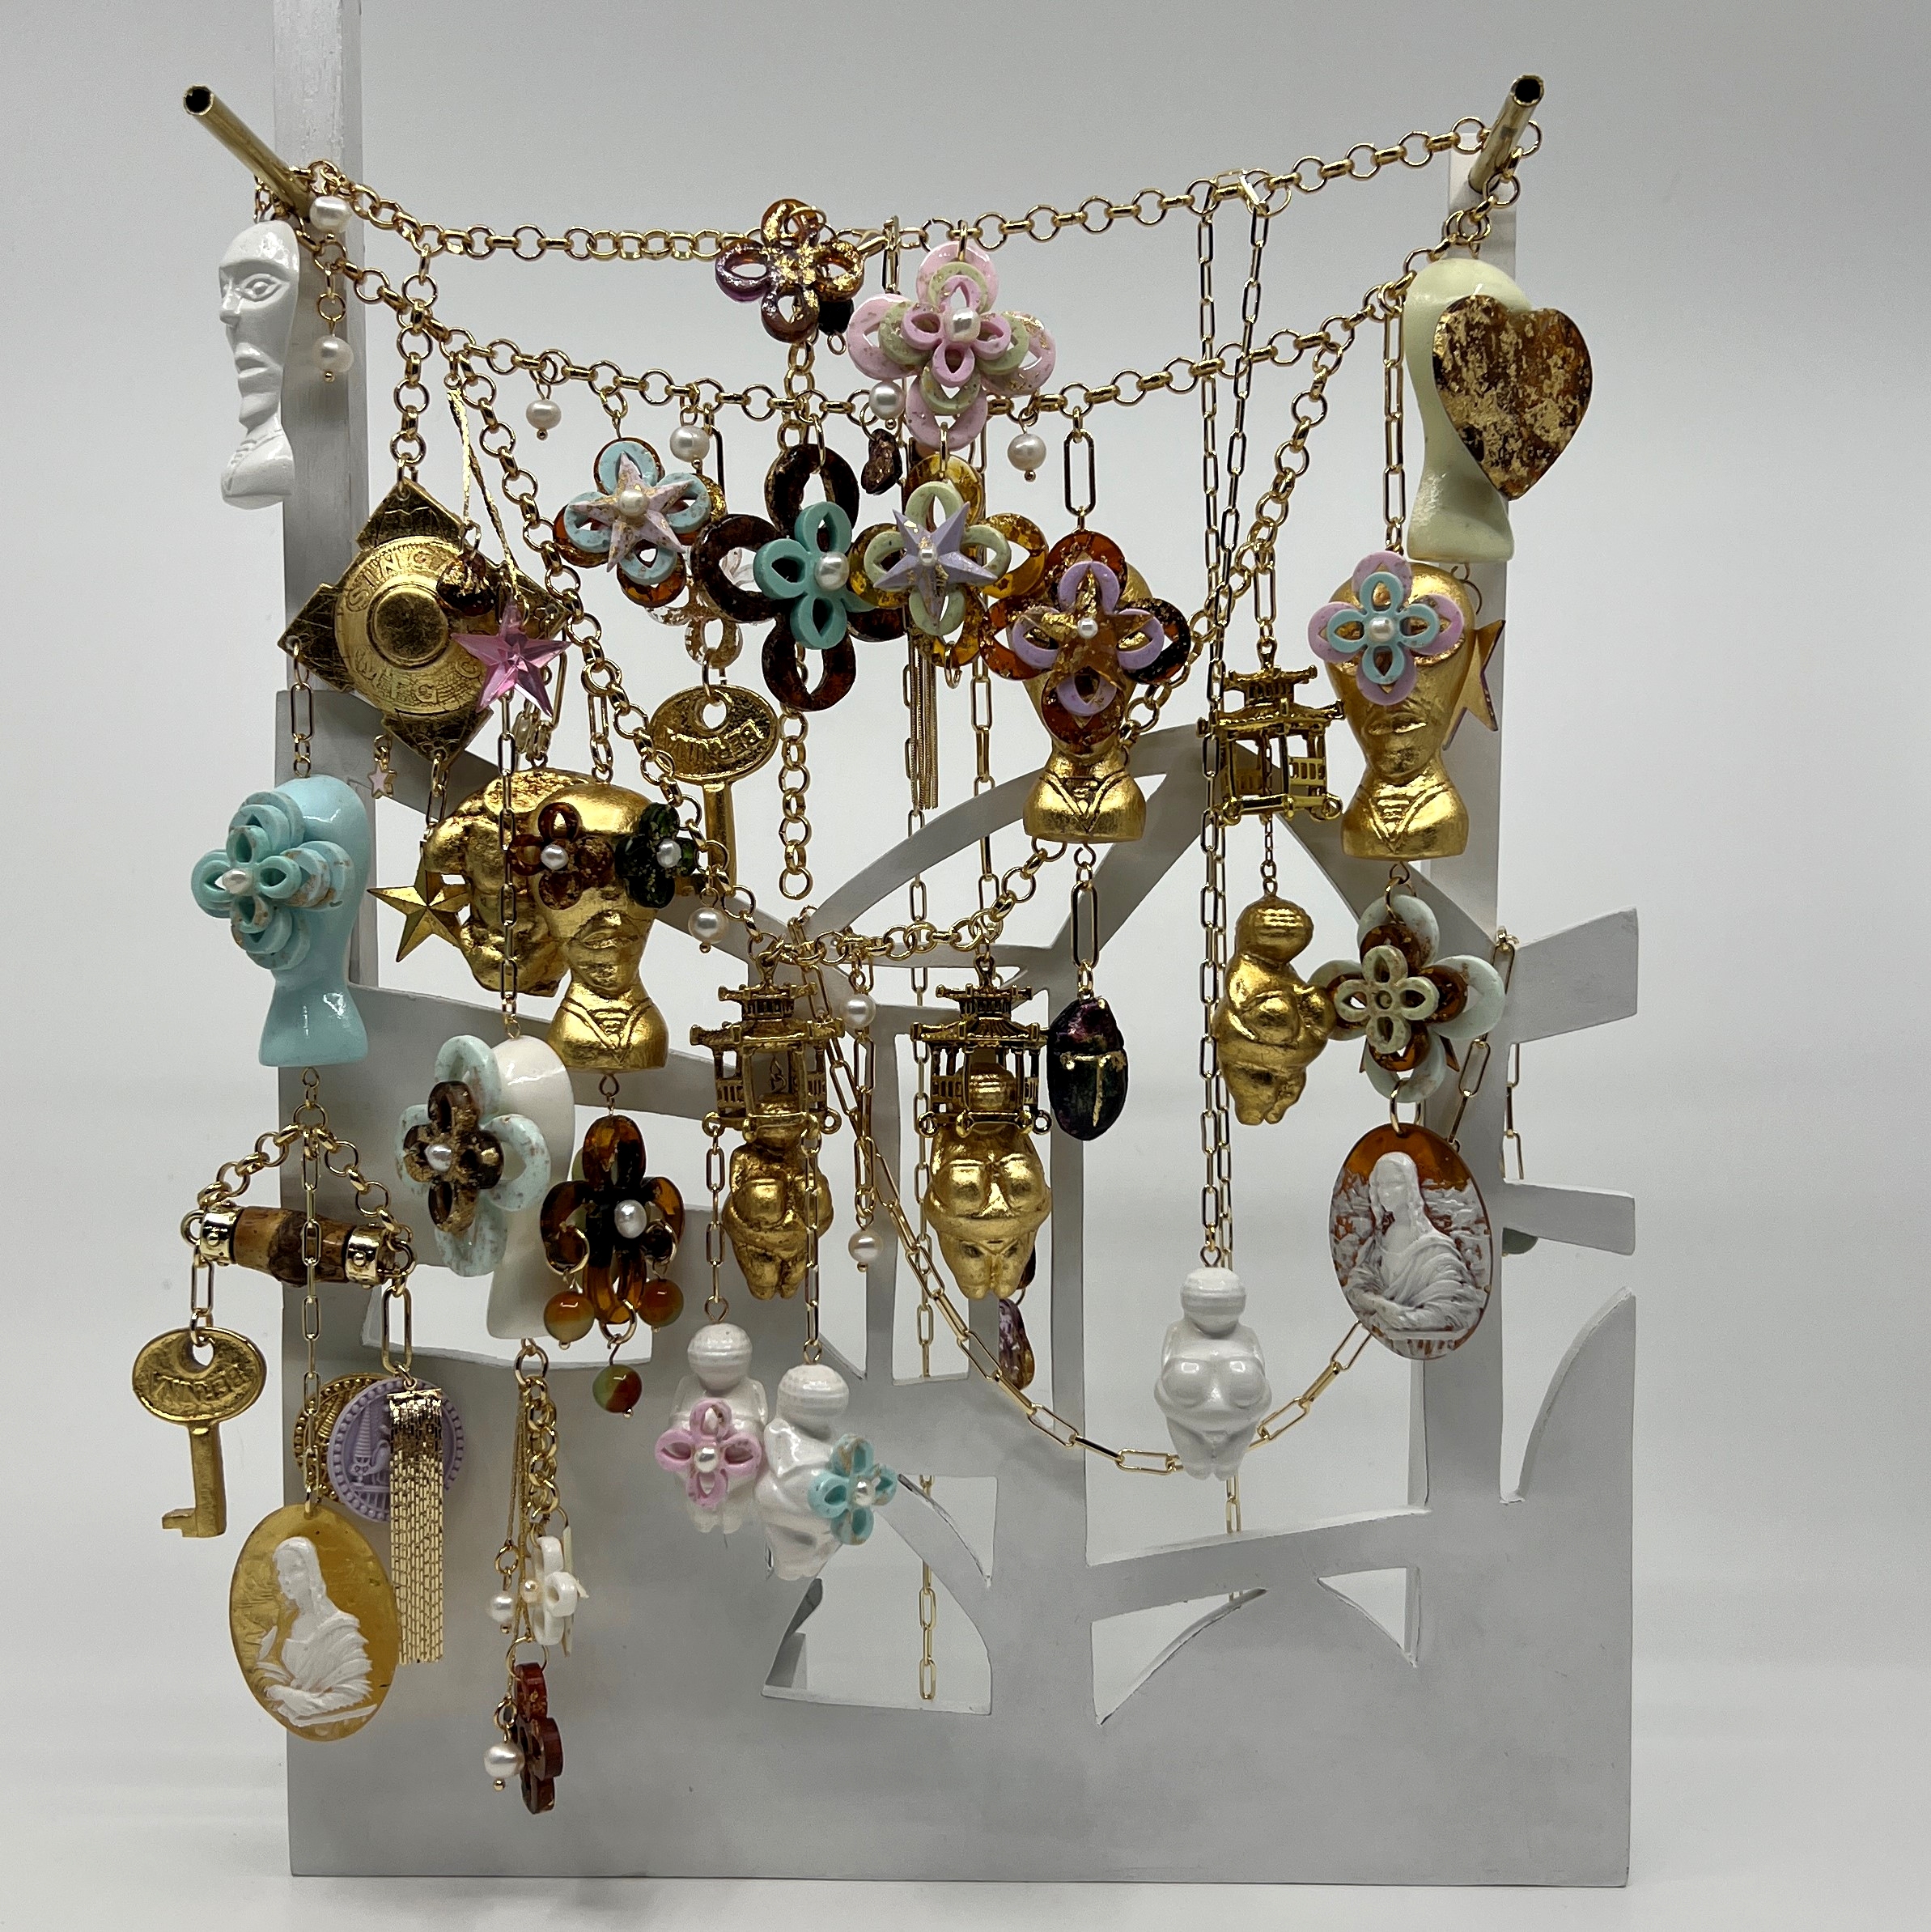 Keepsakes (Necklace with Venus) by Rosie Perl | Lethbridge 20000 2022 Finalists | Lethbridge Gallery